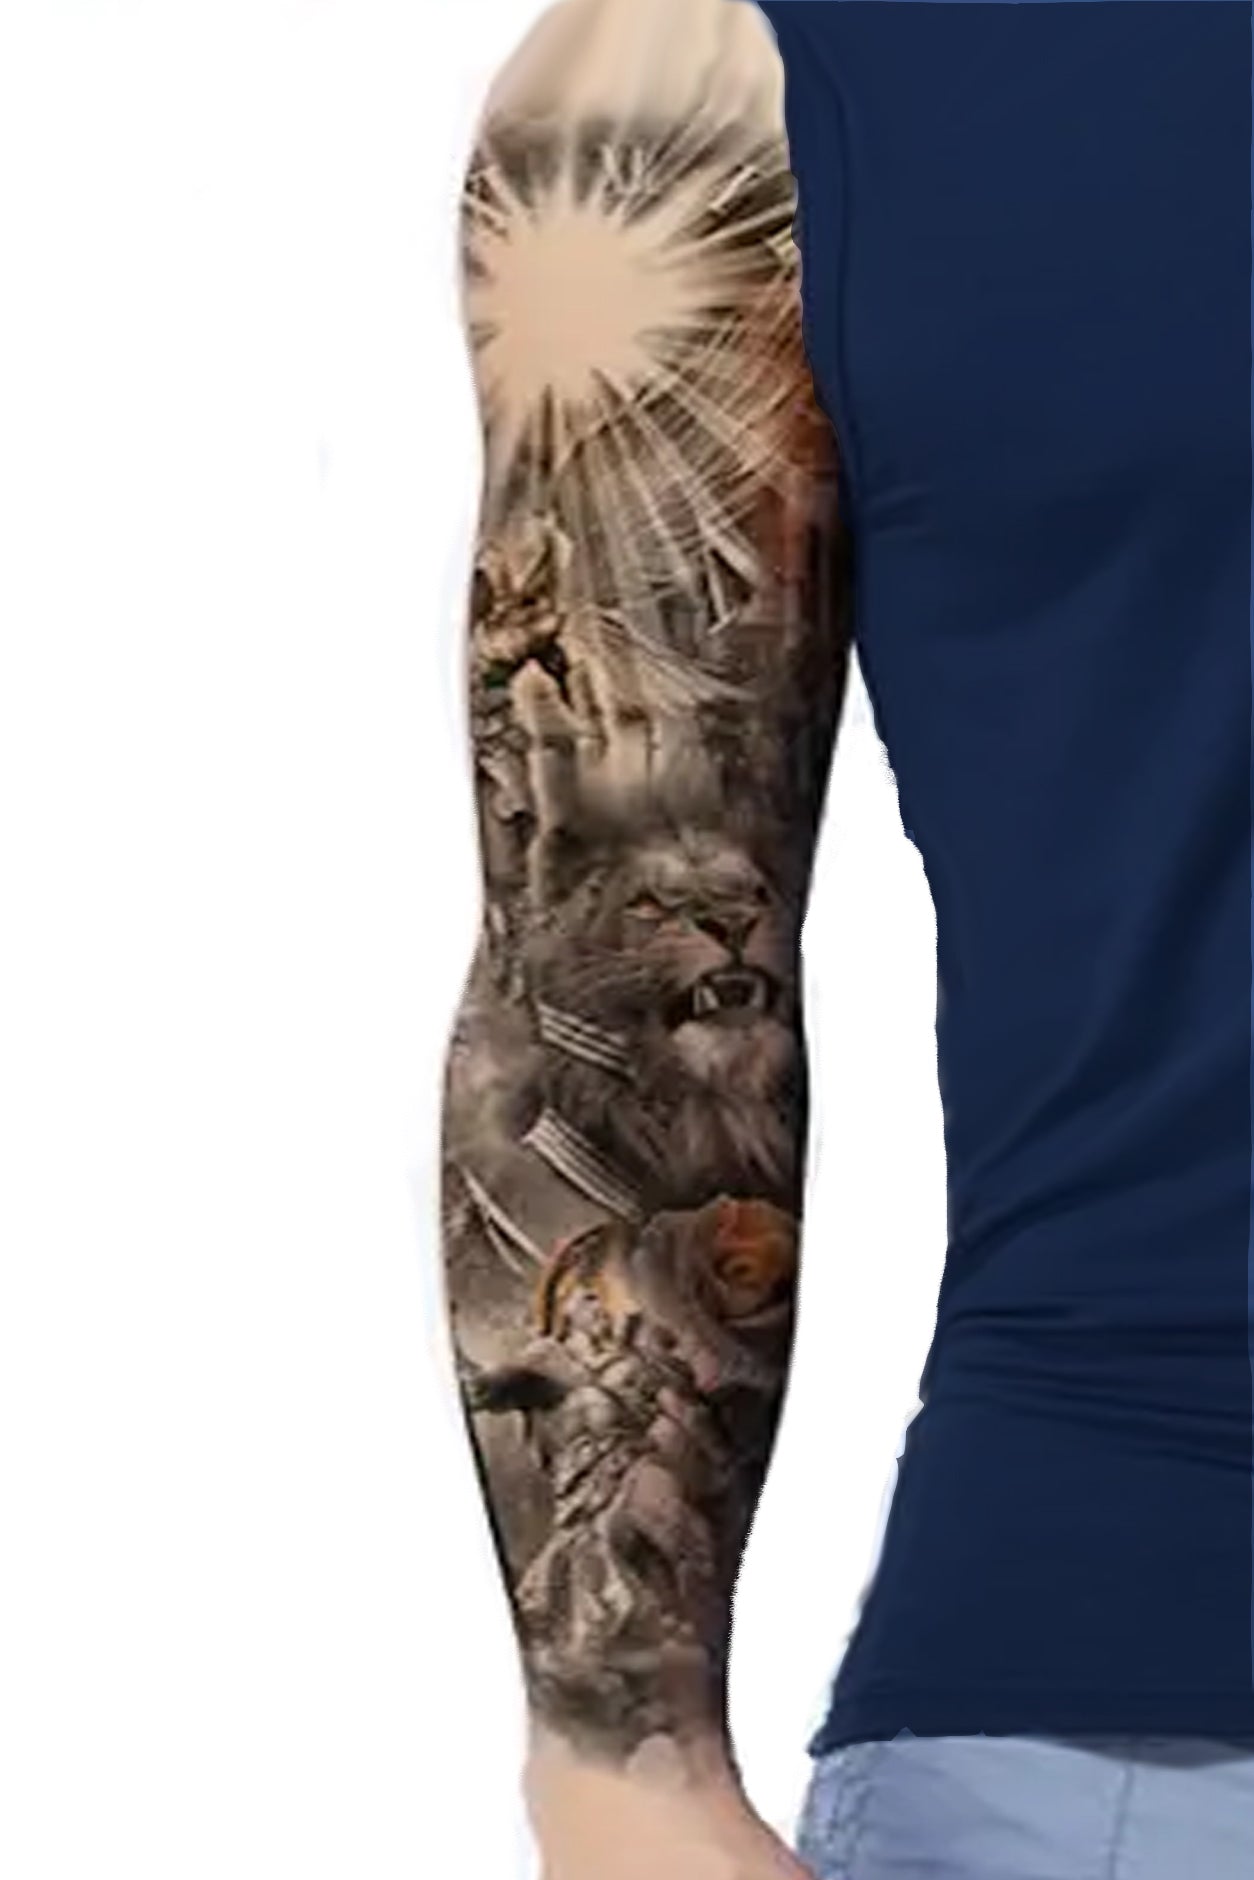 Custom spartan tattoo done by midknight ink- Edmonton, AB, Canada : r/ tattoos